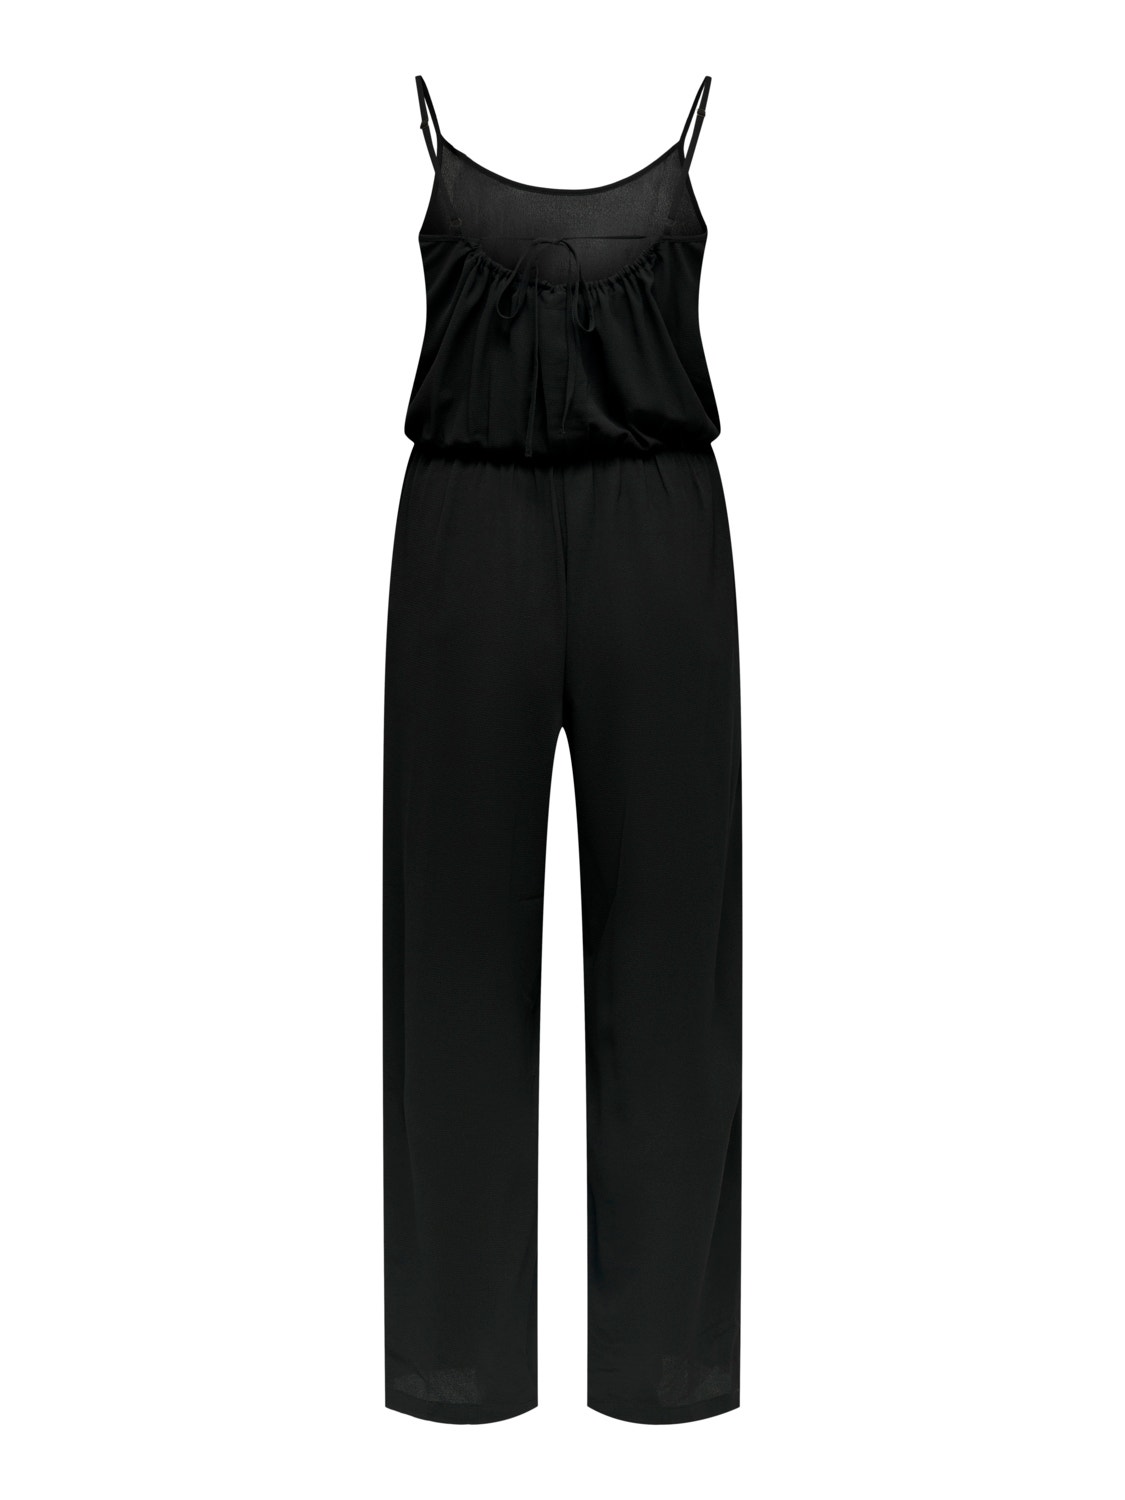 ONLY Jumpsuit med brede ben -Black - 15300900